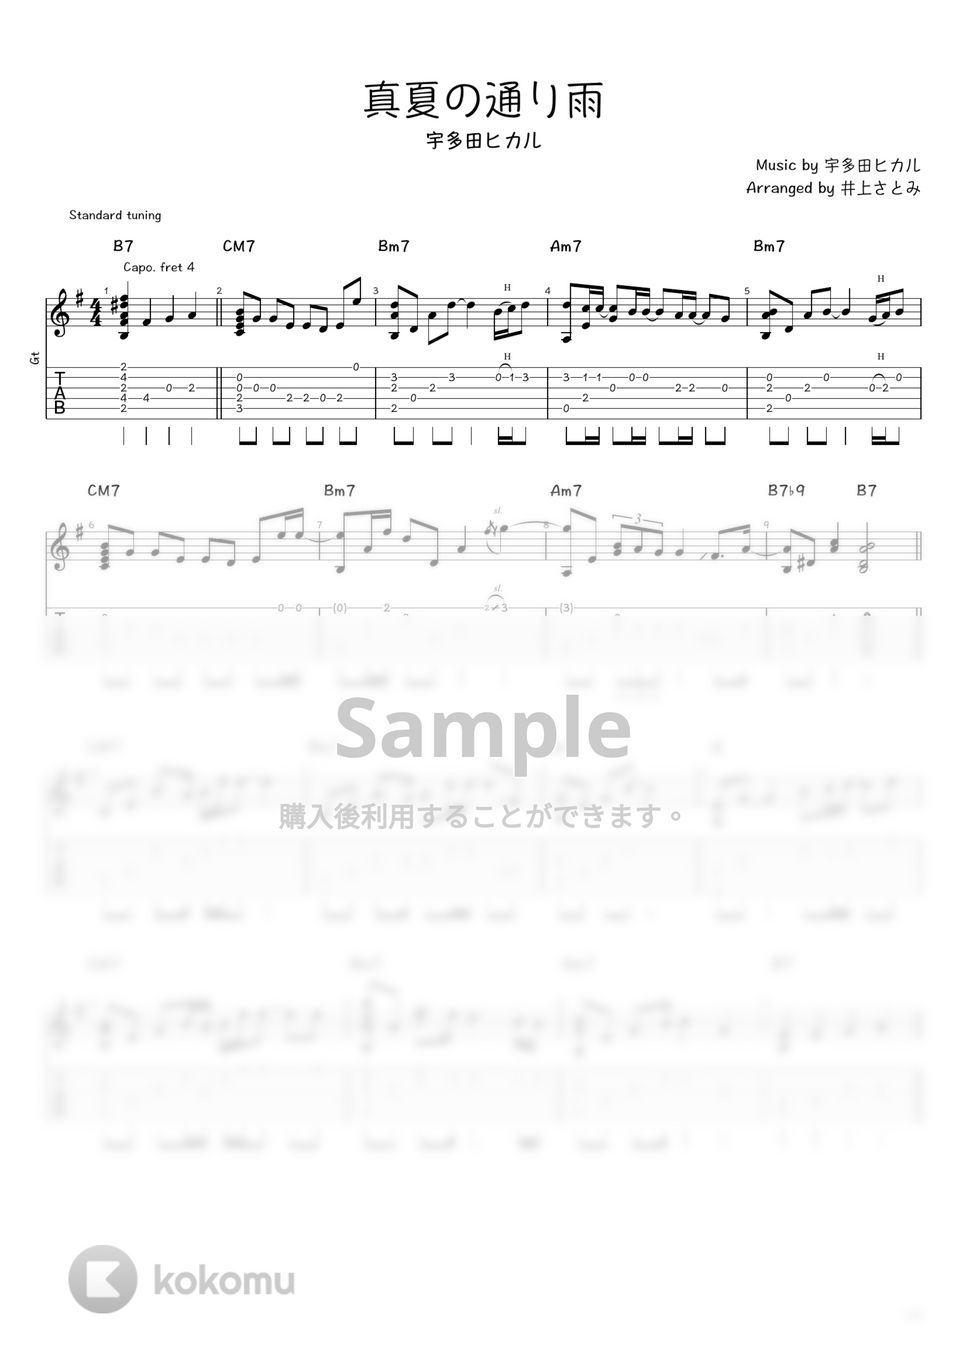 宇多田ヒカル - 真夏の通り雨 (ソロギター / タブ譜) by 井上さとみ